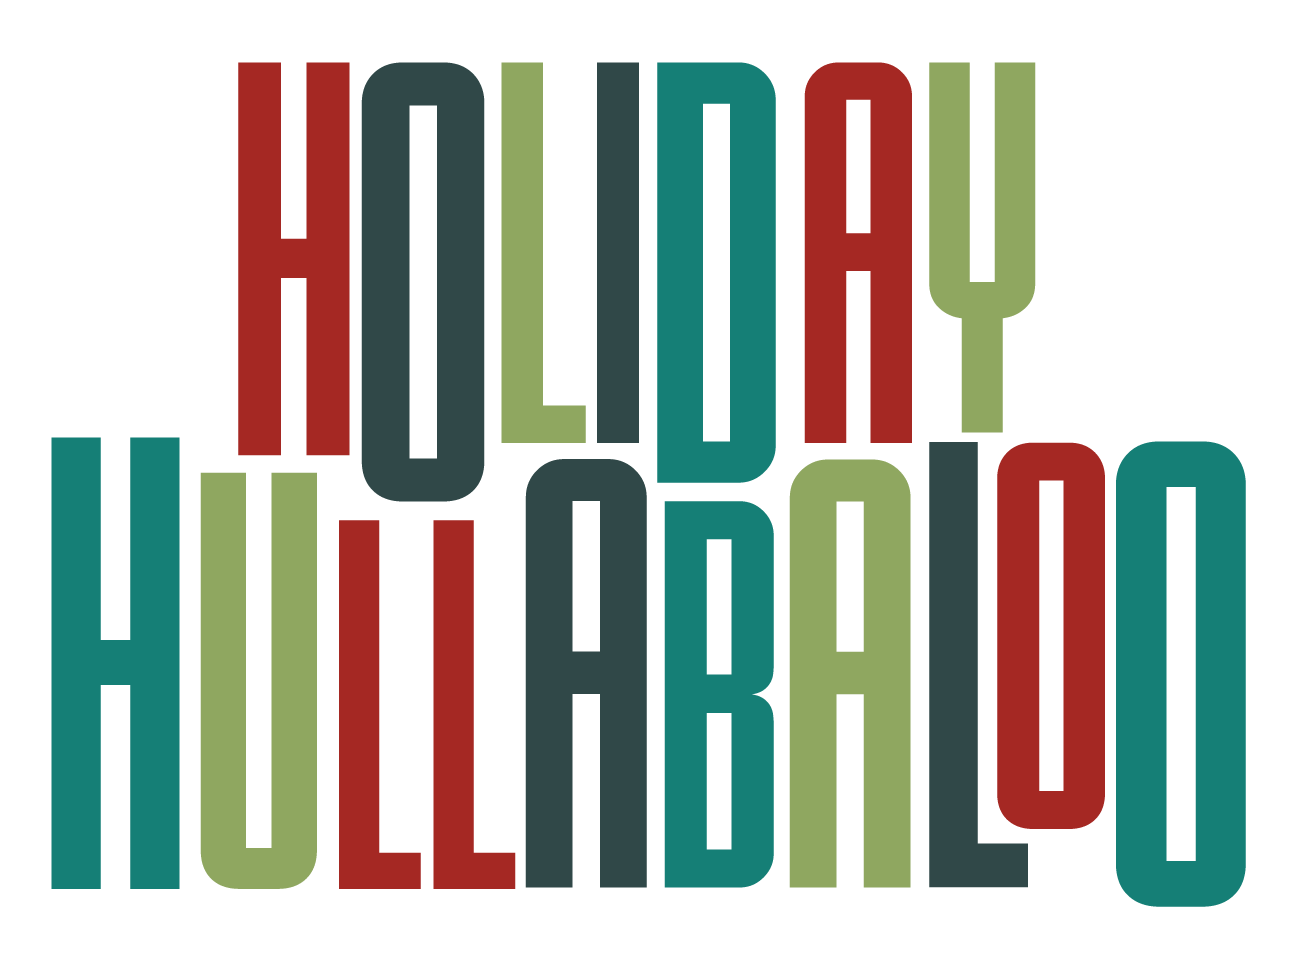 Holiday Hullabaloo logo